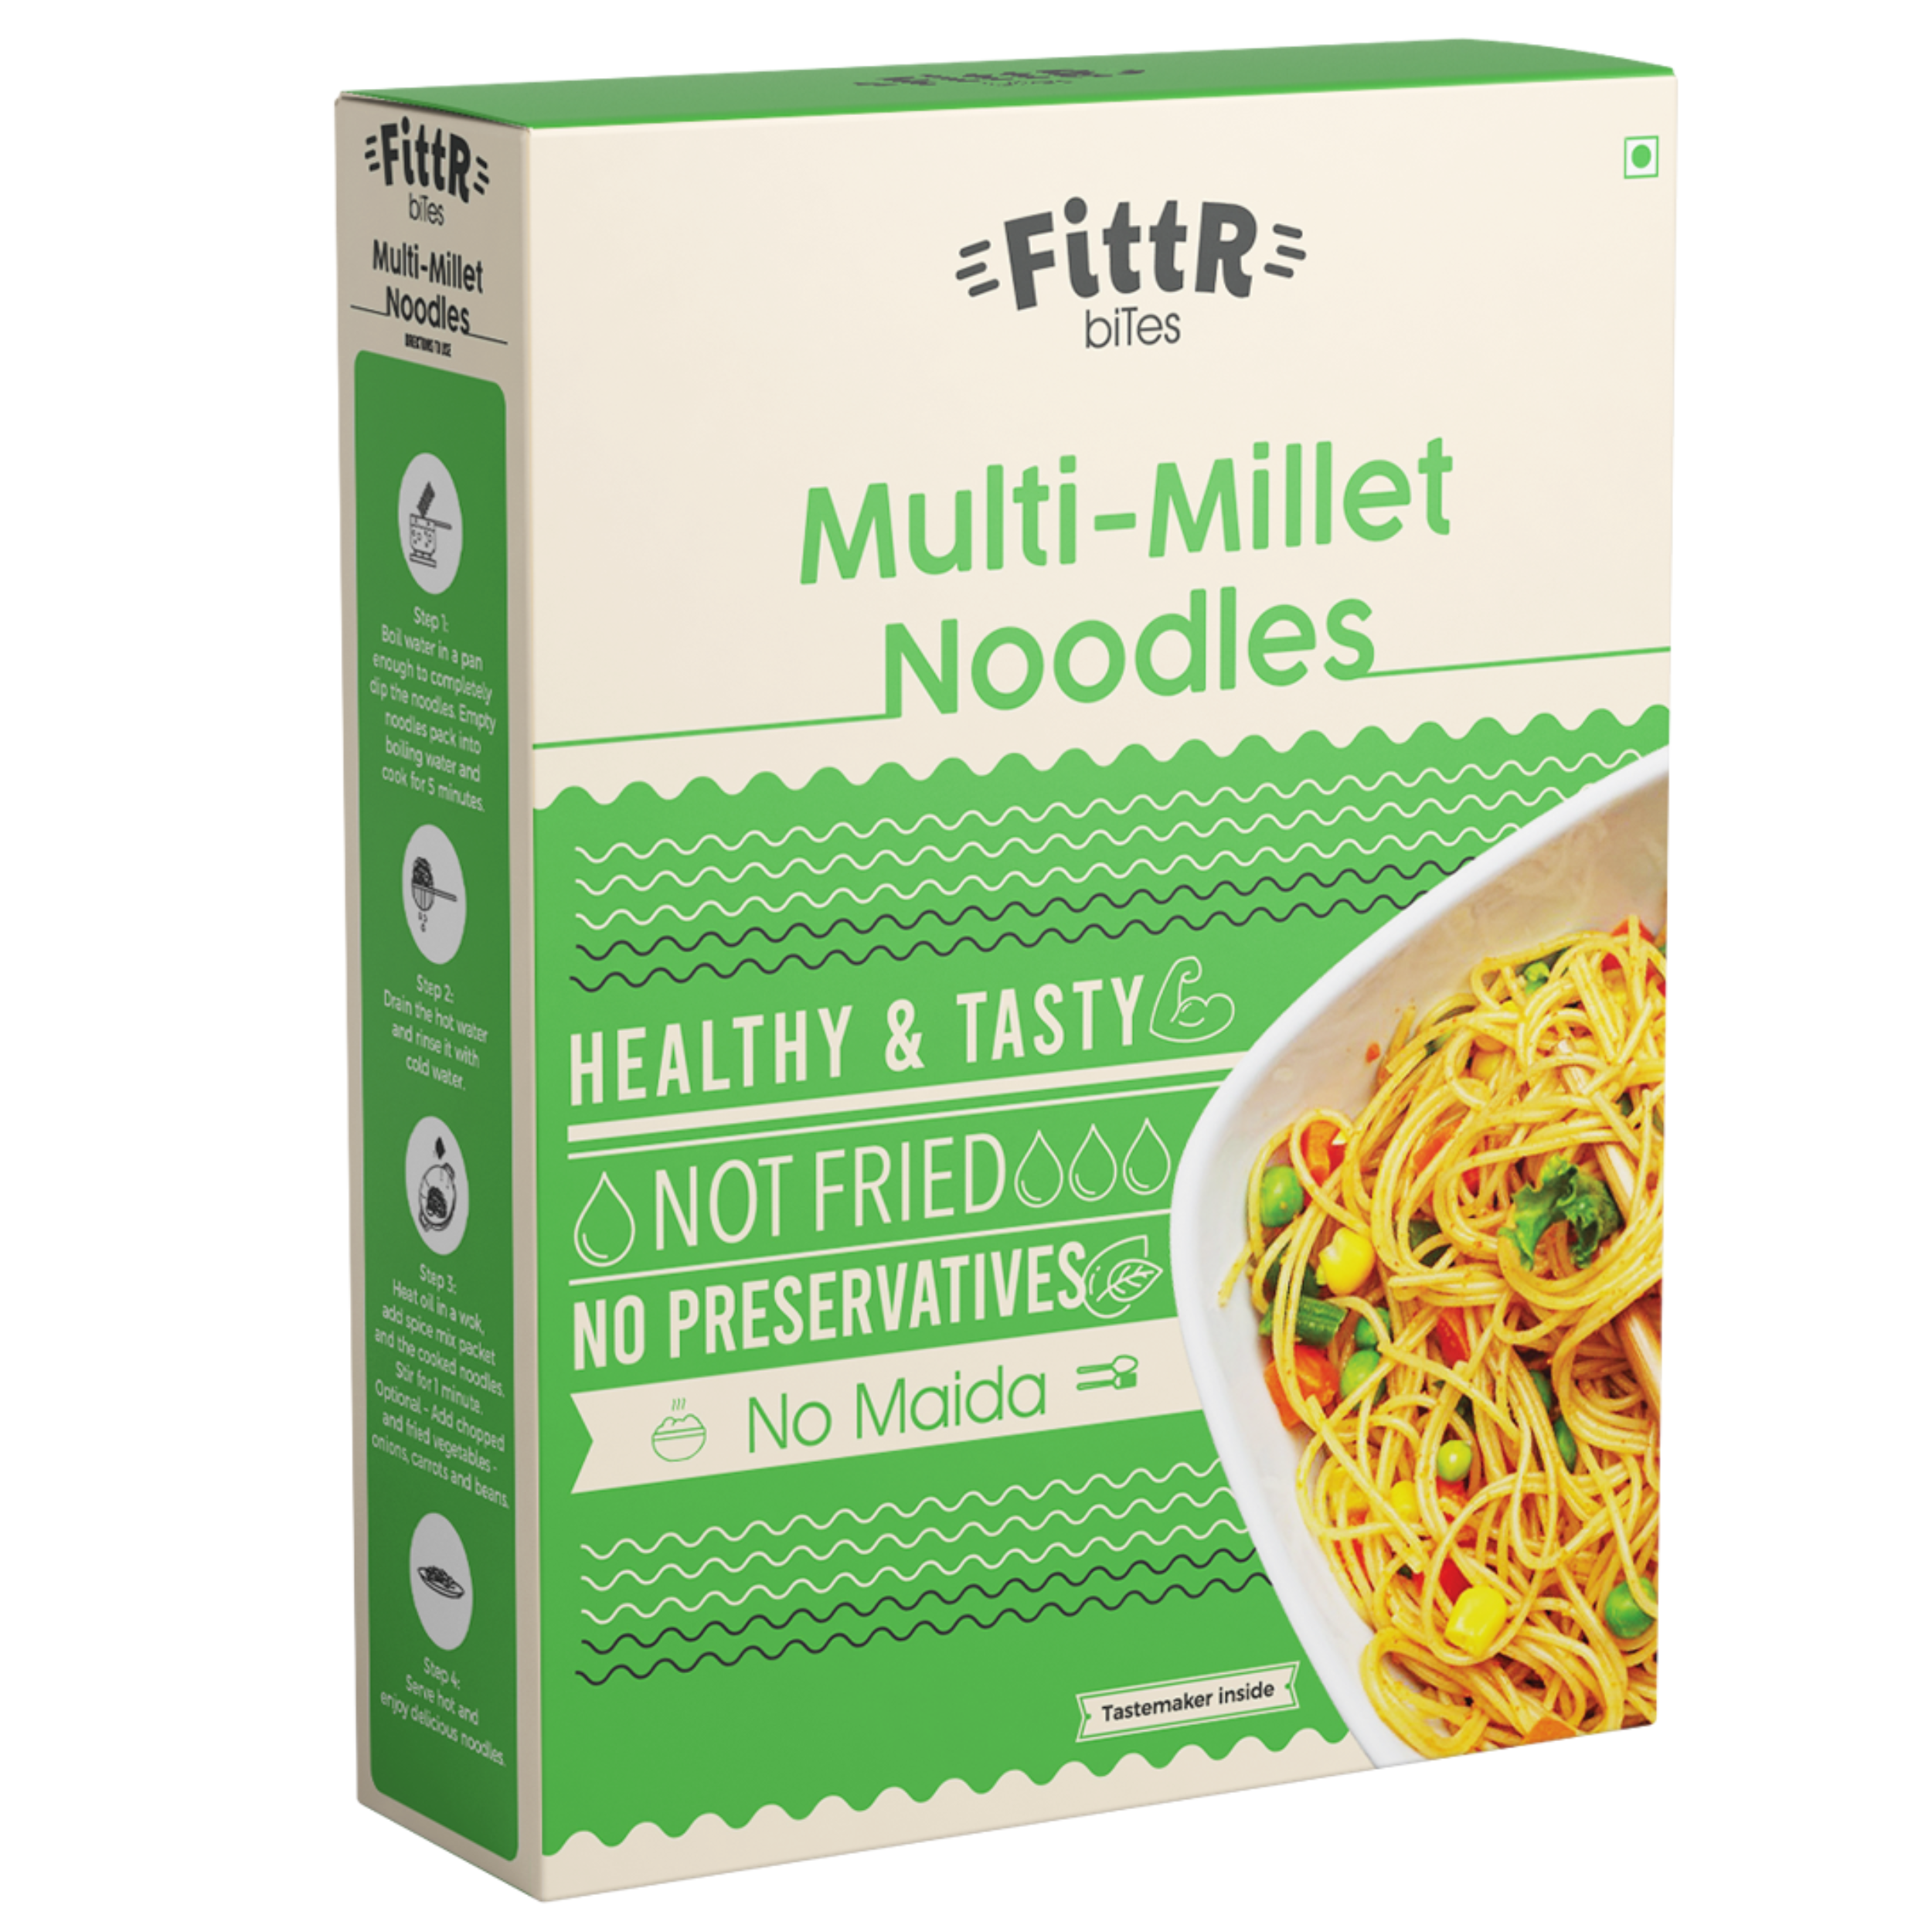 Multi Millets Noodles & Finger Millets (Ragi) Noodles Combo | Pack of 2 | 192g Each